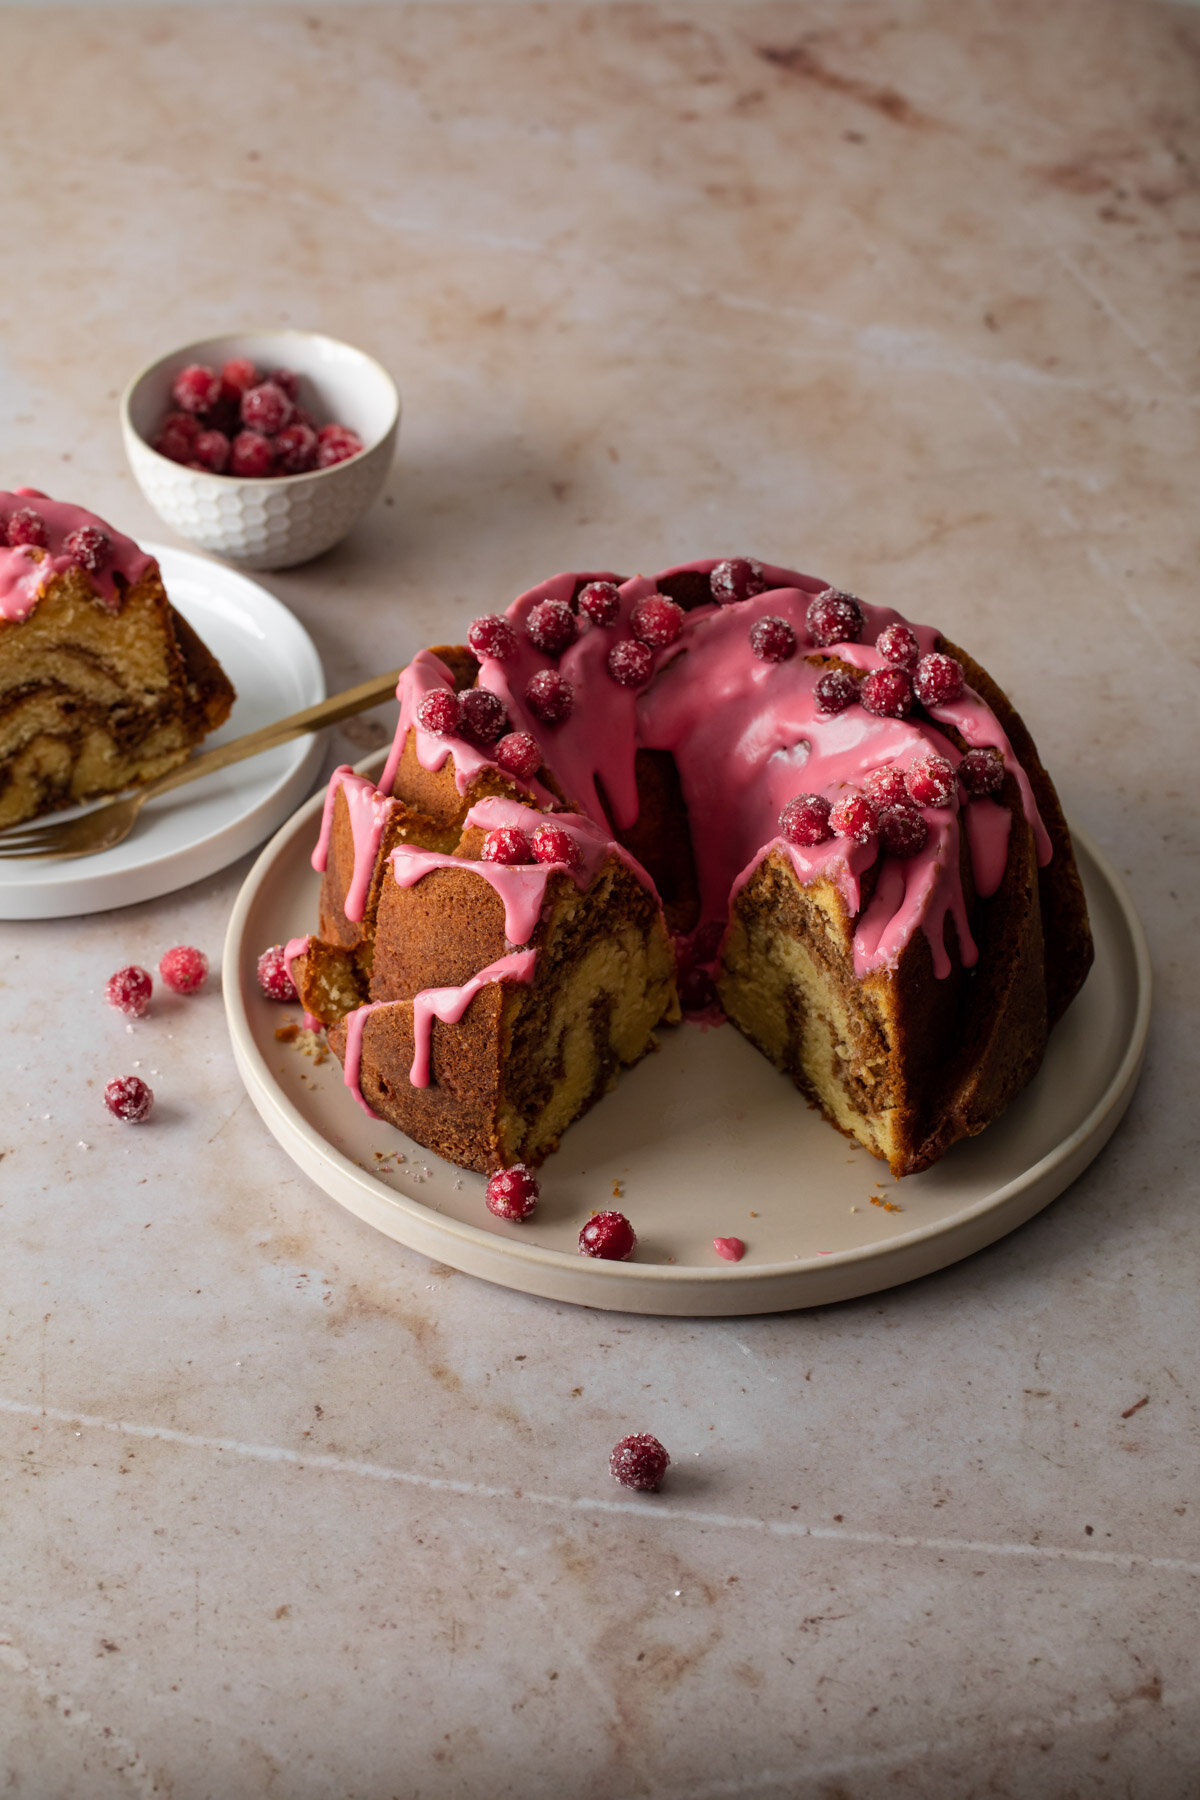 Cinnamon Swirl Bundt Cake with Cranberry glaze